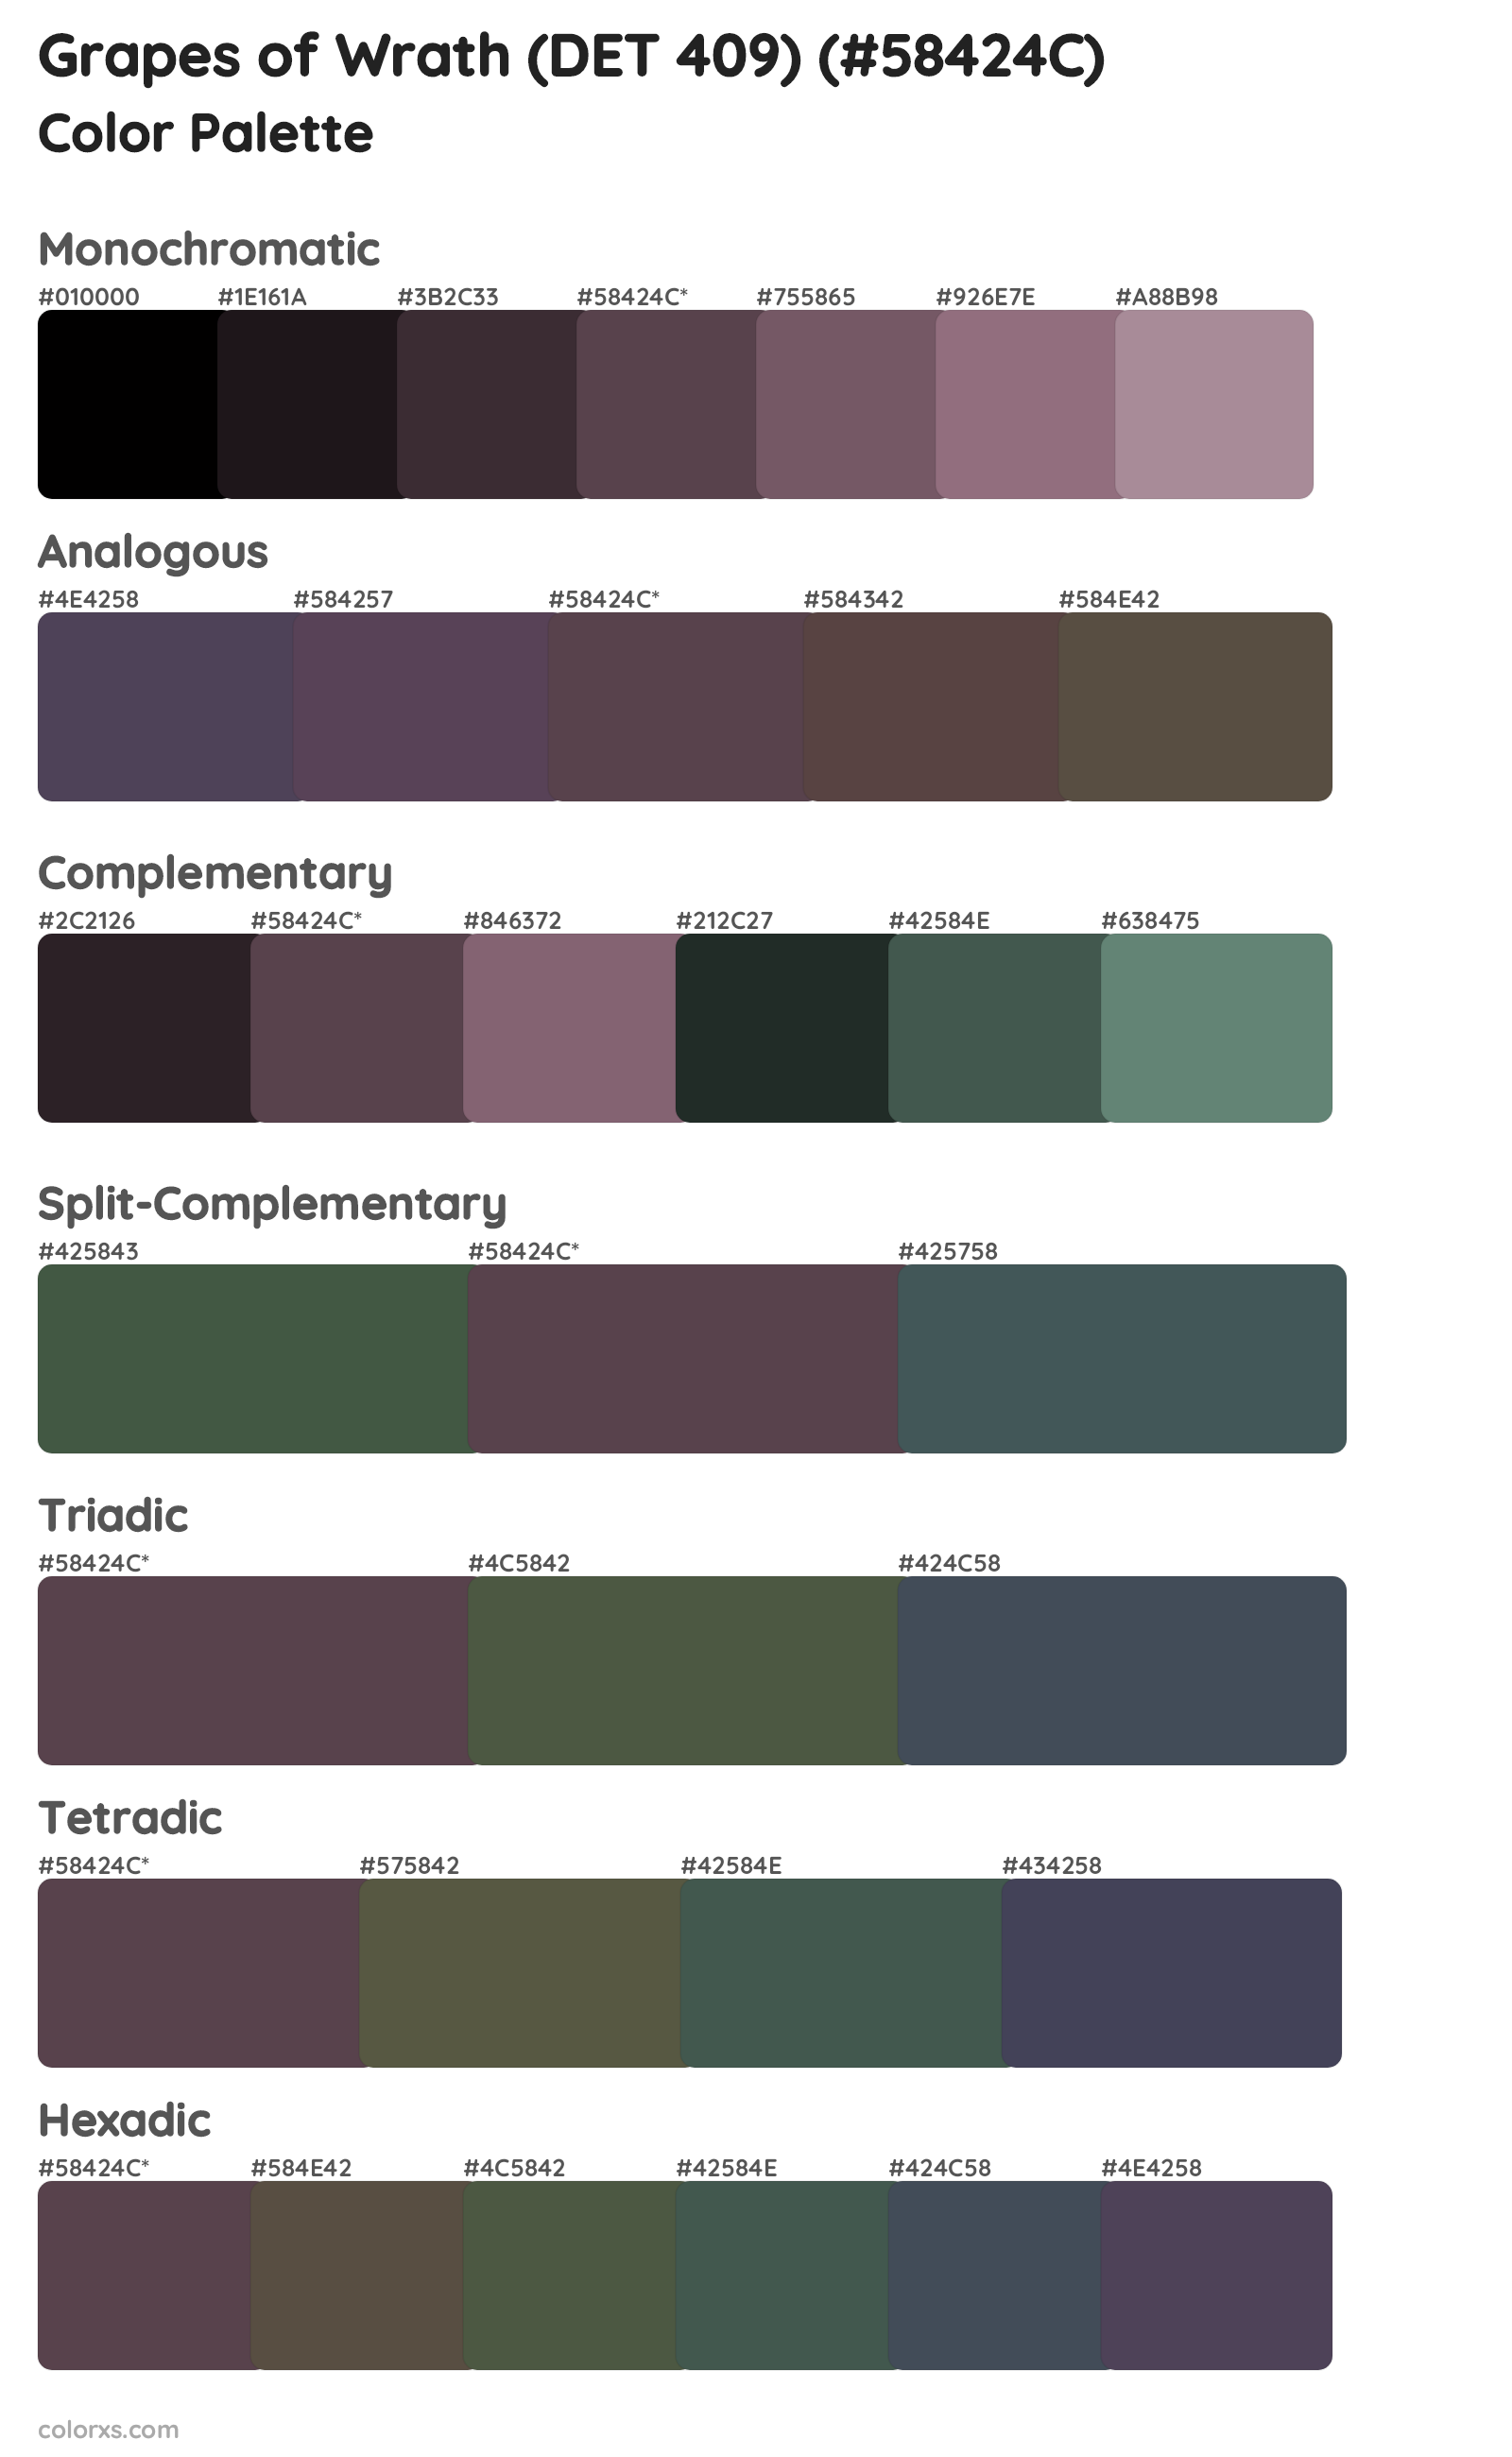 Grapes of Wrath (DET 409) Color Scheme Palettes